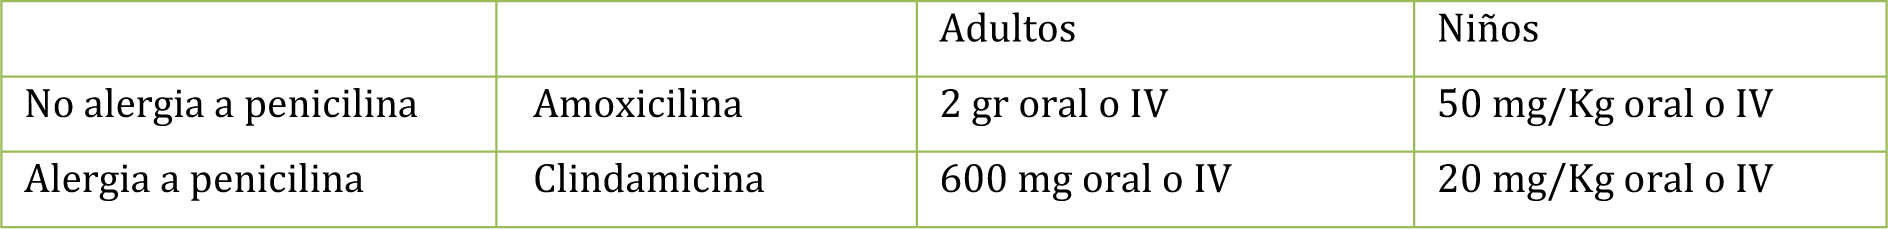 tabla indicaciones profilaxis antibiotica